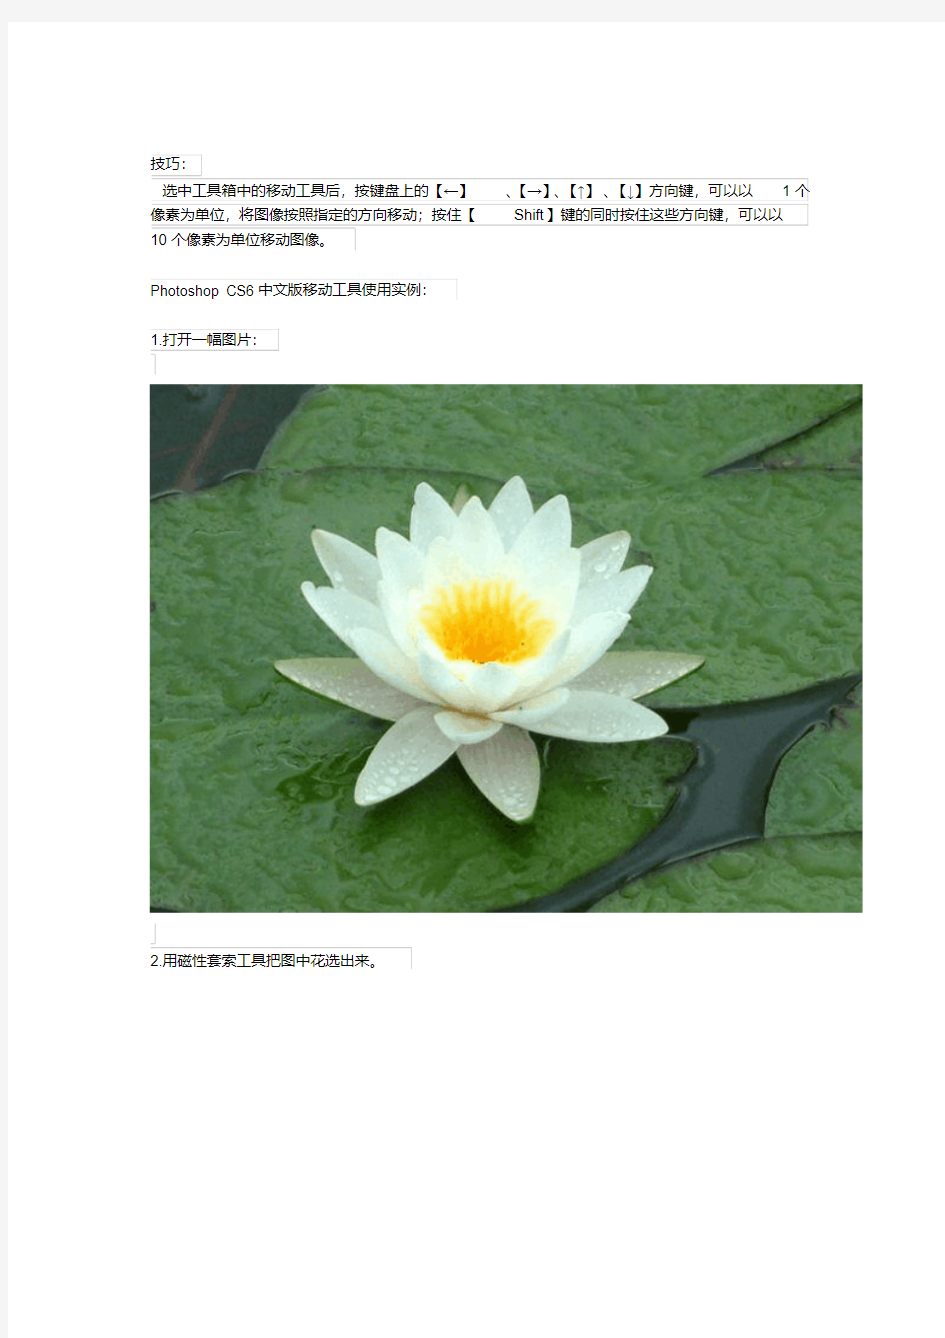 PhotoshopCS6中文版工具使用方法详解教程